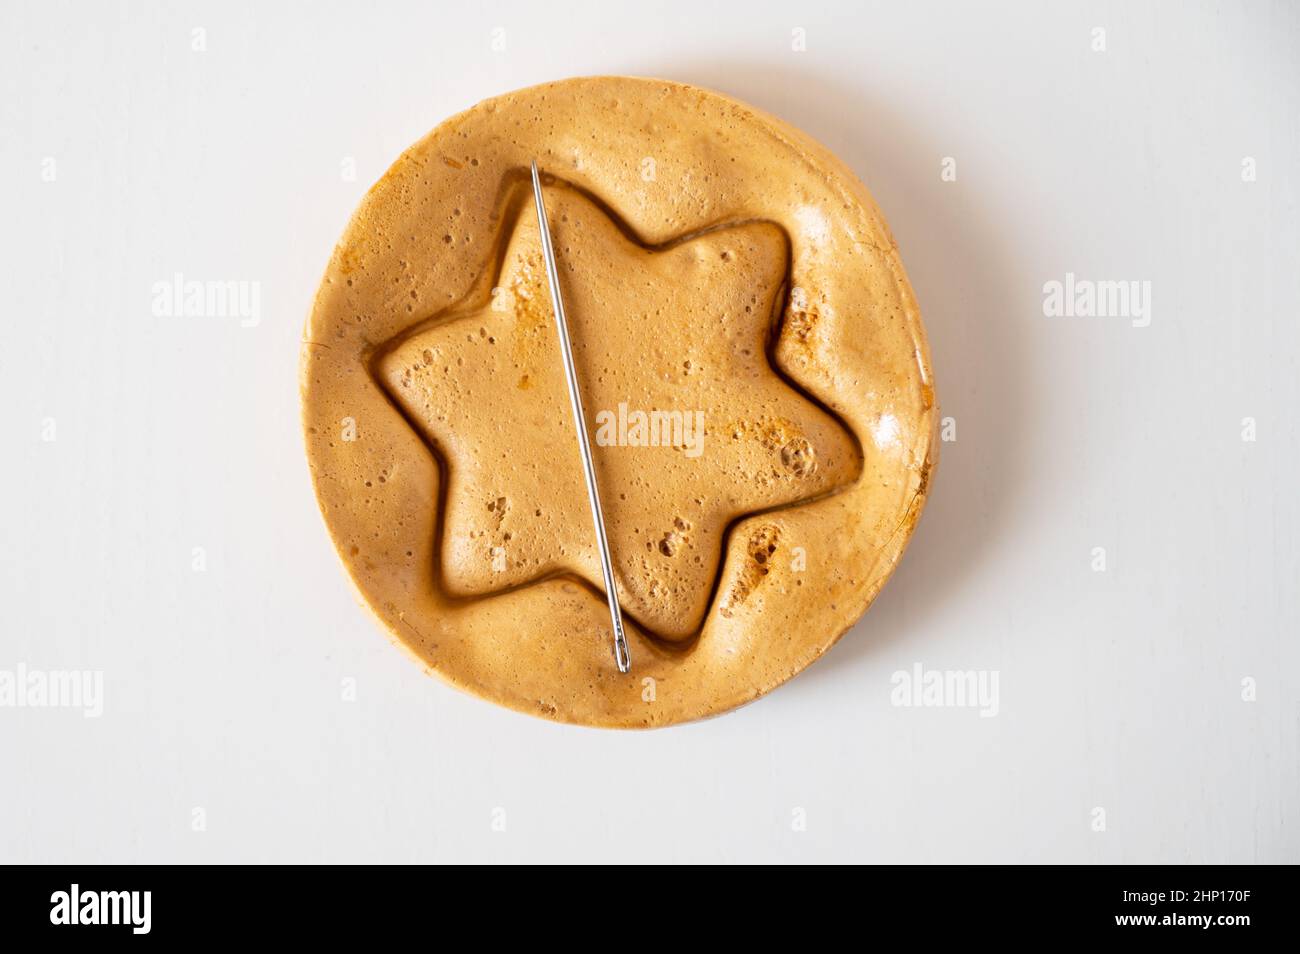 Biscuits de sucre brun caramel avec une aiguille en métal en forme d'étoile sur fond blanc. Banque D'Images